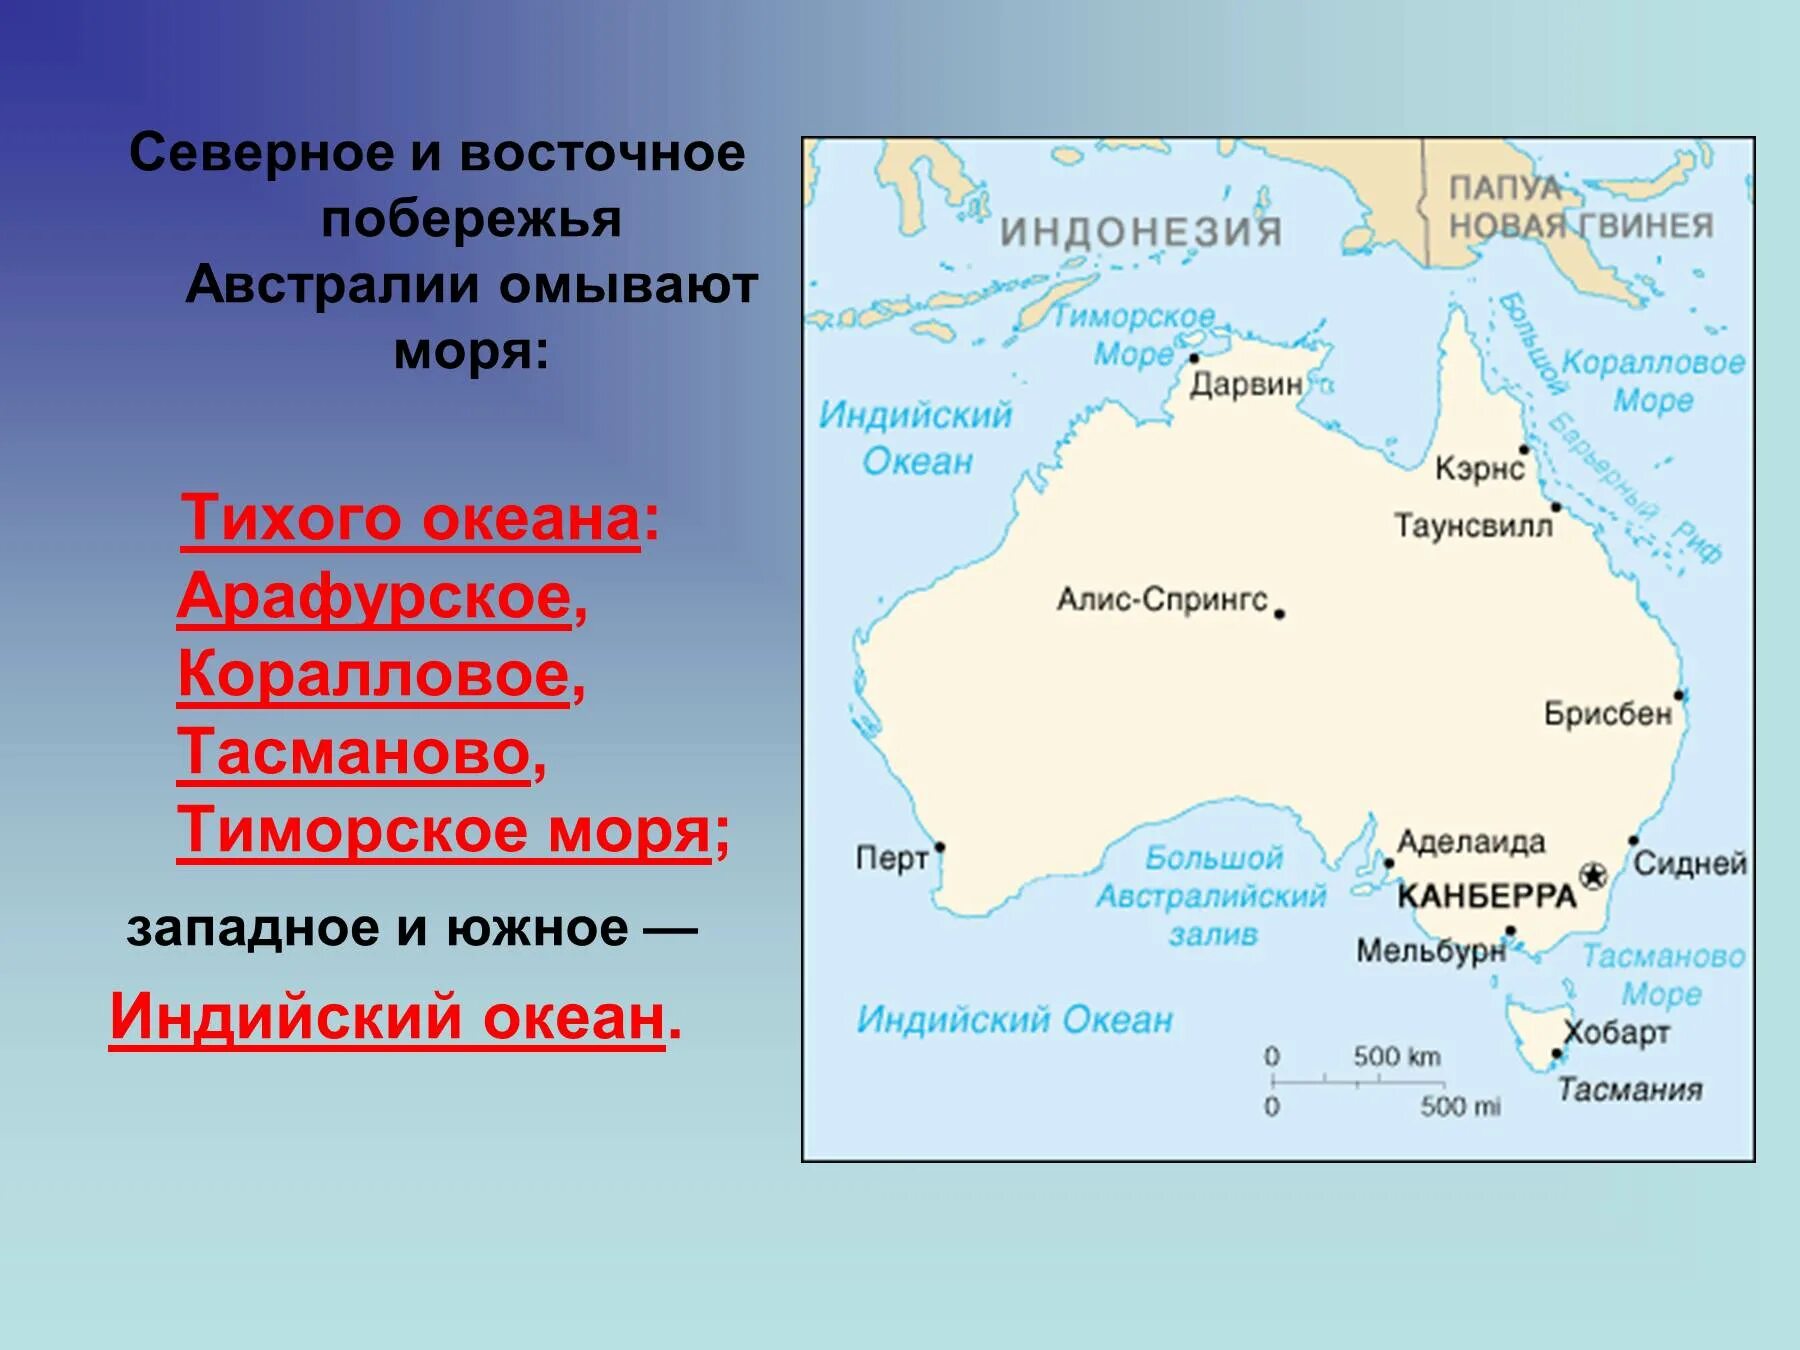 Австралия омывается 2 океанами. Моря: тасманово, Тиморское, коралловое, Арафурское.. Тасманово море на карте Австралии. Австралия моря тасманово коралловое и Арафурское. Австралия моря и океаны омывающие материк.